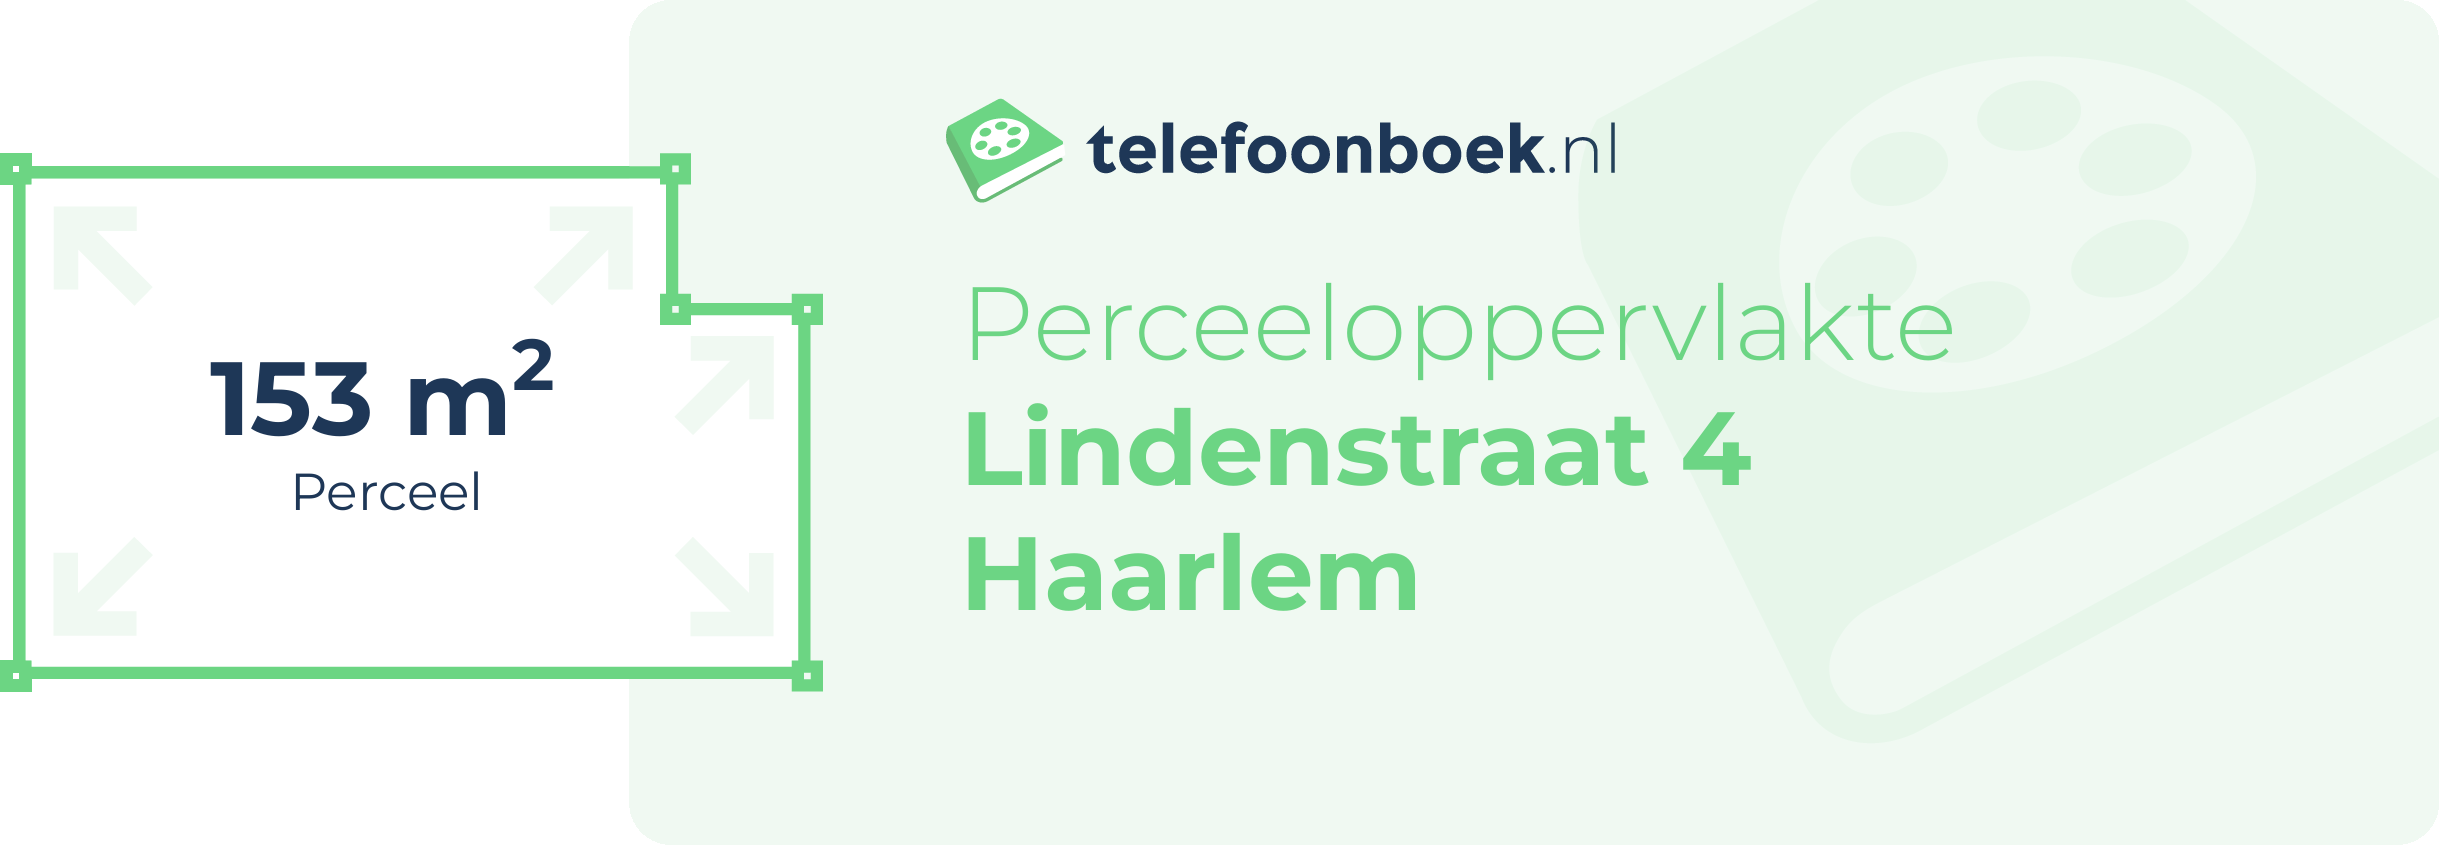 Perceeloppervlakte Lindenstraat 4 Haarlem